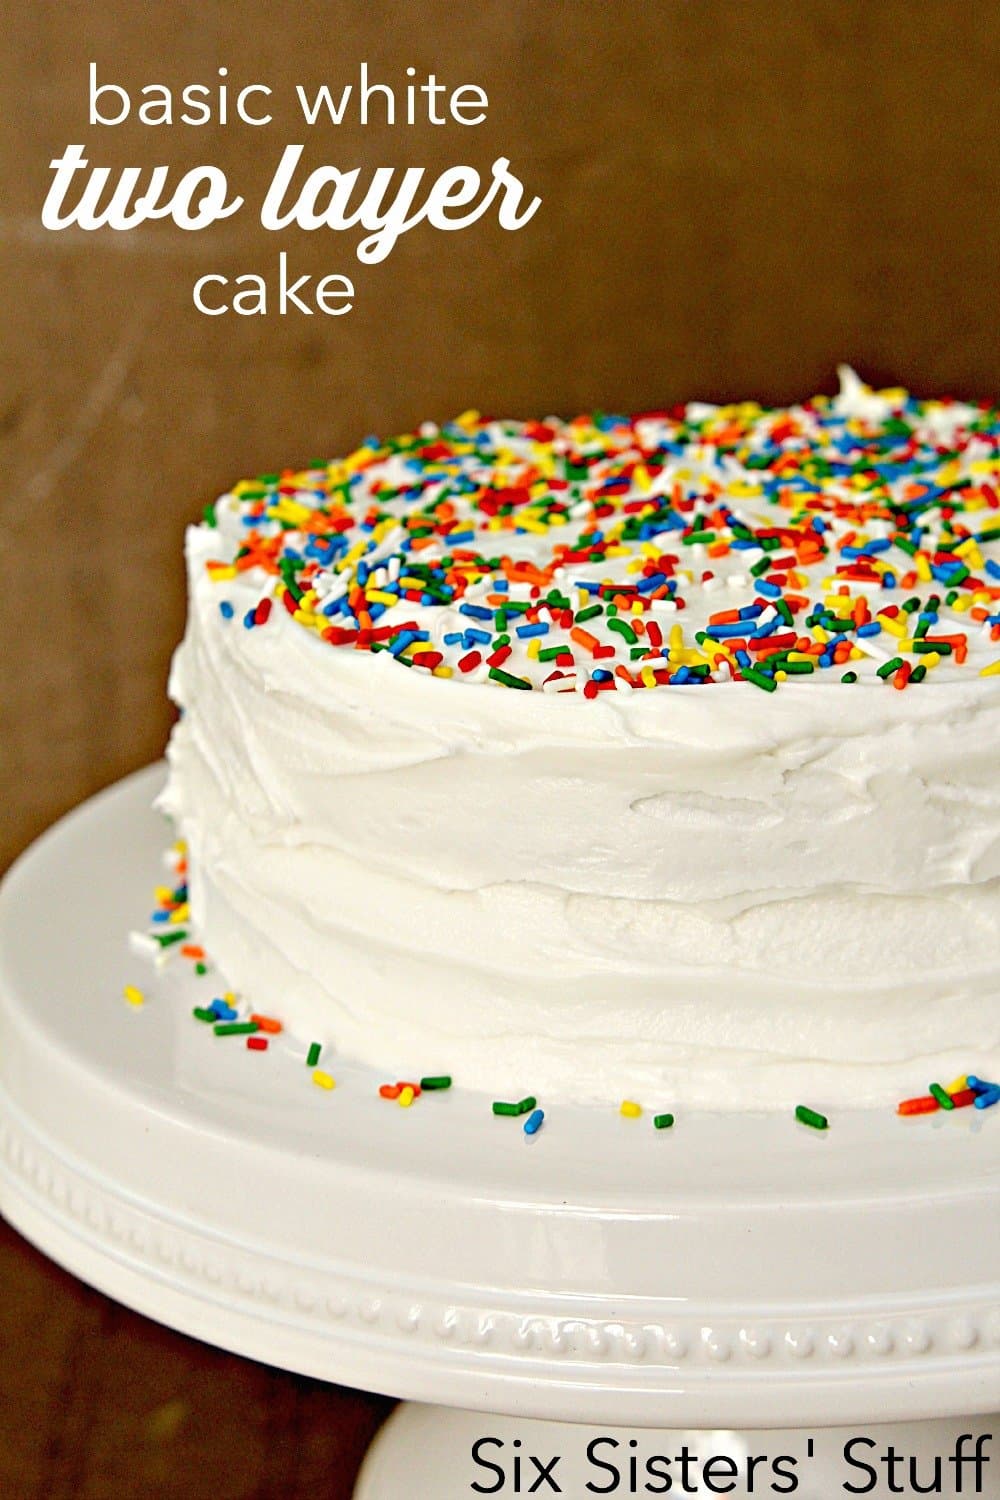 basic white 2 layer cake